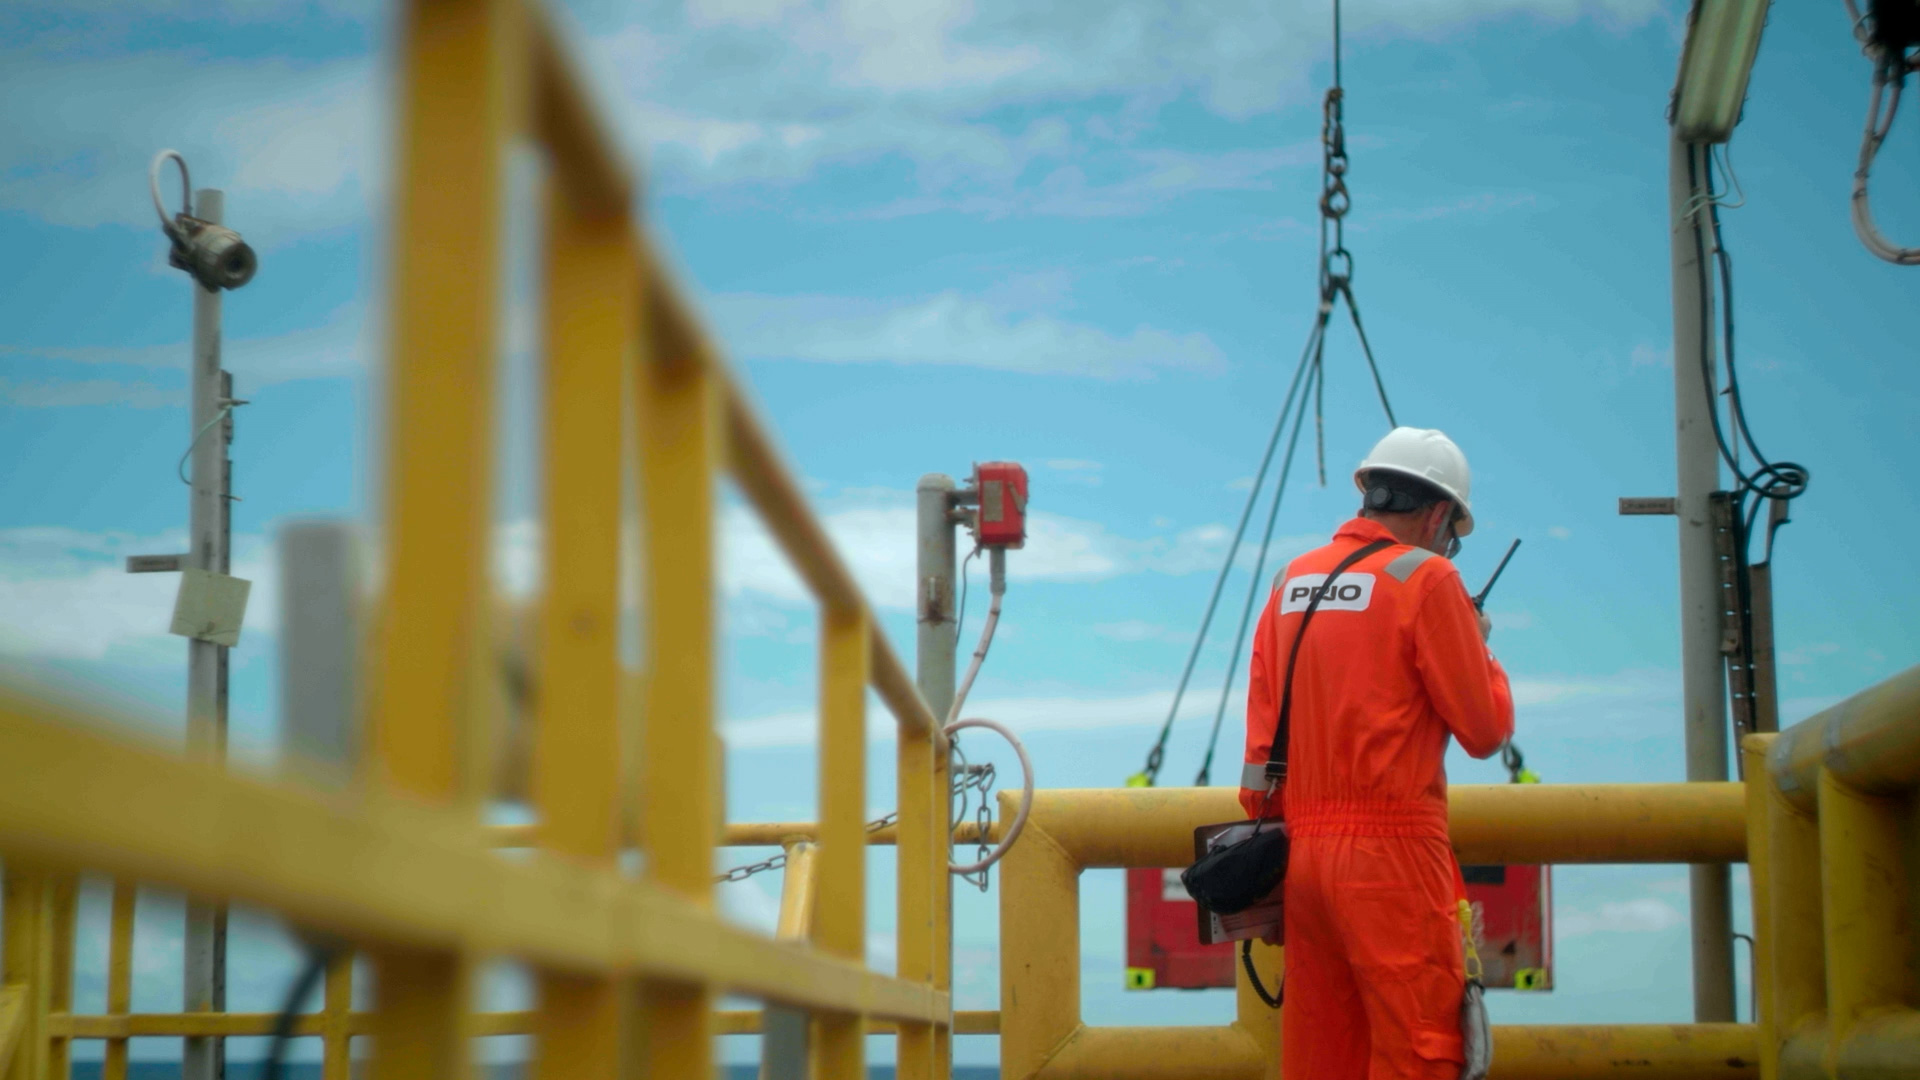 Os efeitos colaterais da taxação das exportações de petróleo. Na imagem: Funcionário da PRIO de uniforme laranja e capacete branco, de costas, em plataforma na Bacia de Campos (Foto: Cortesia)